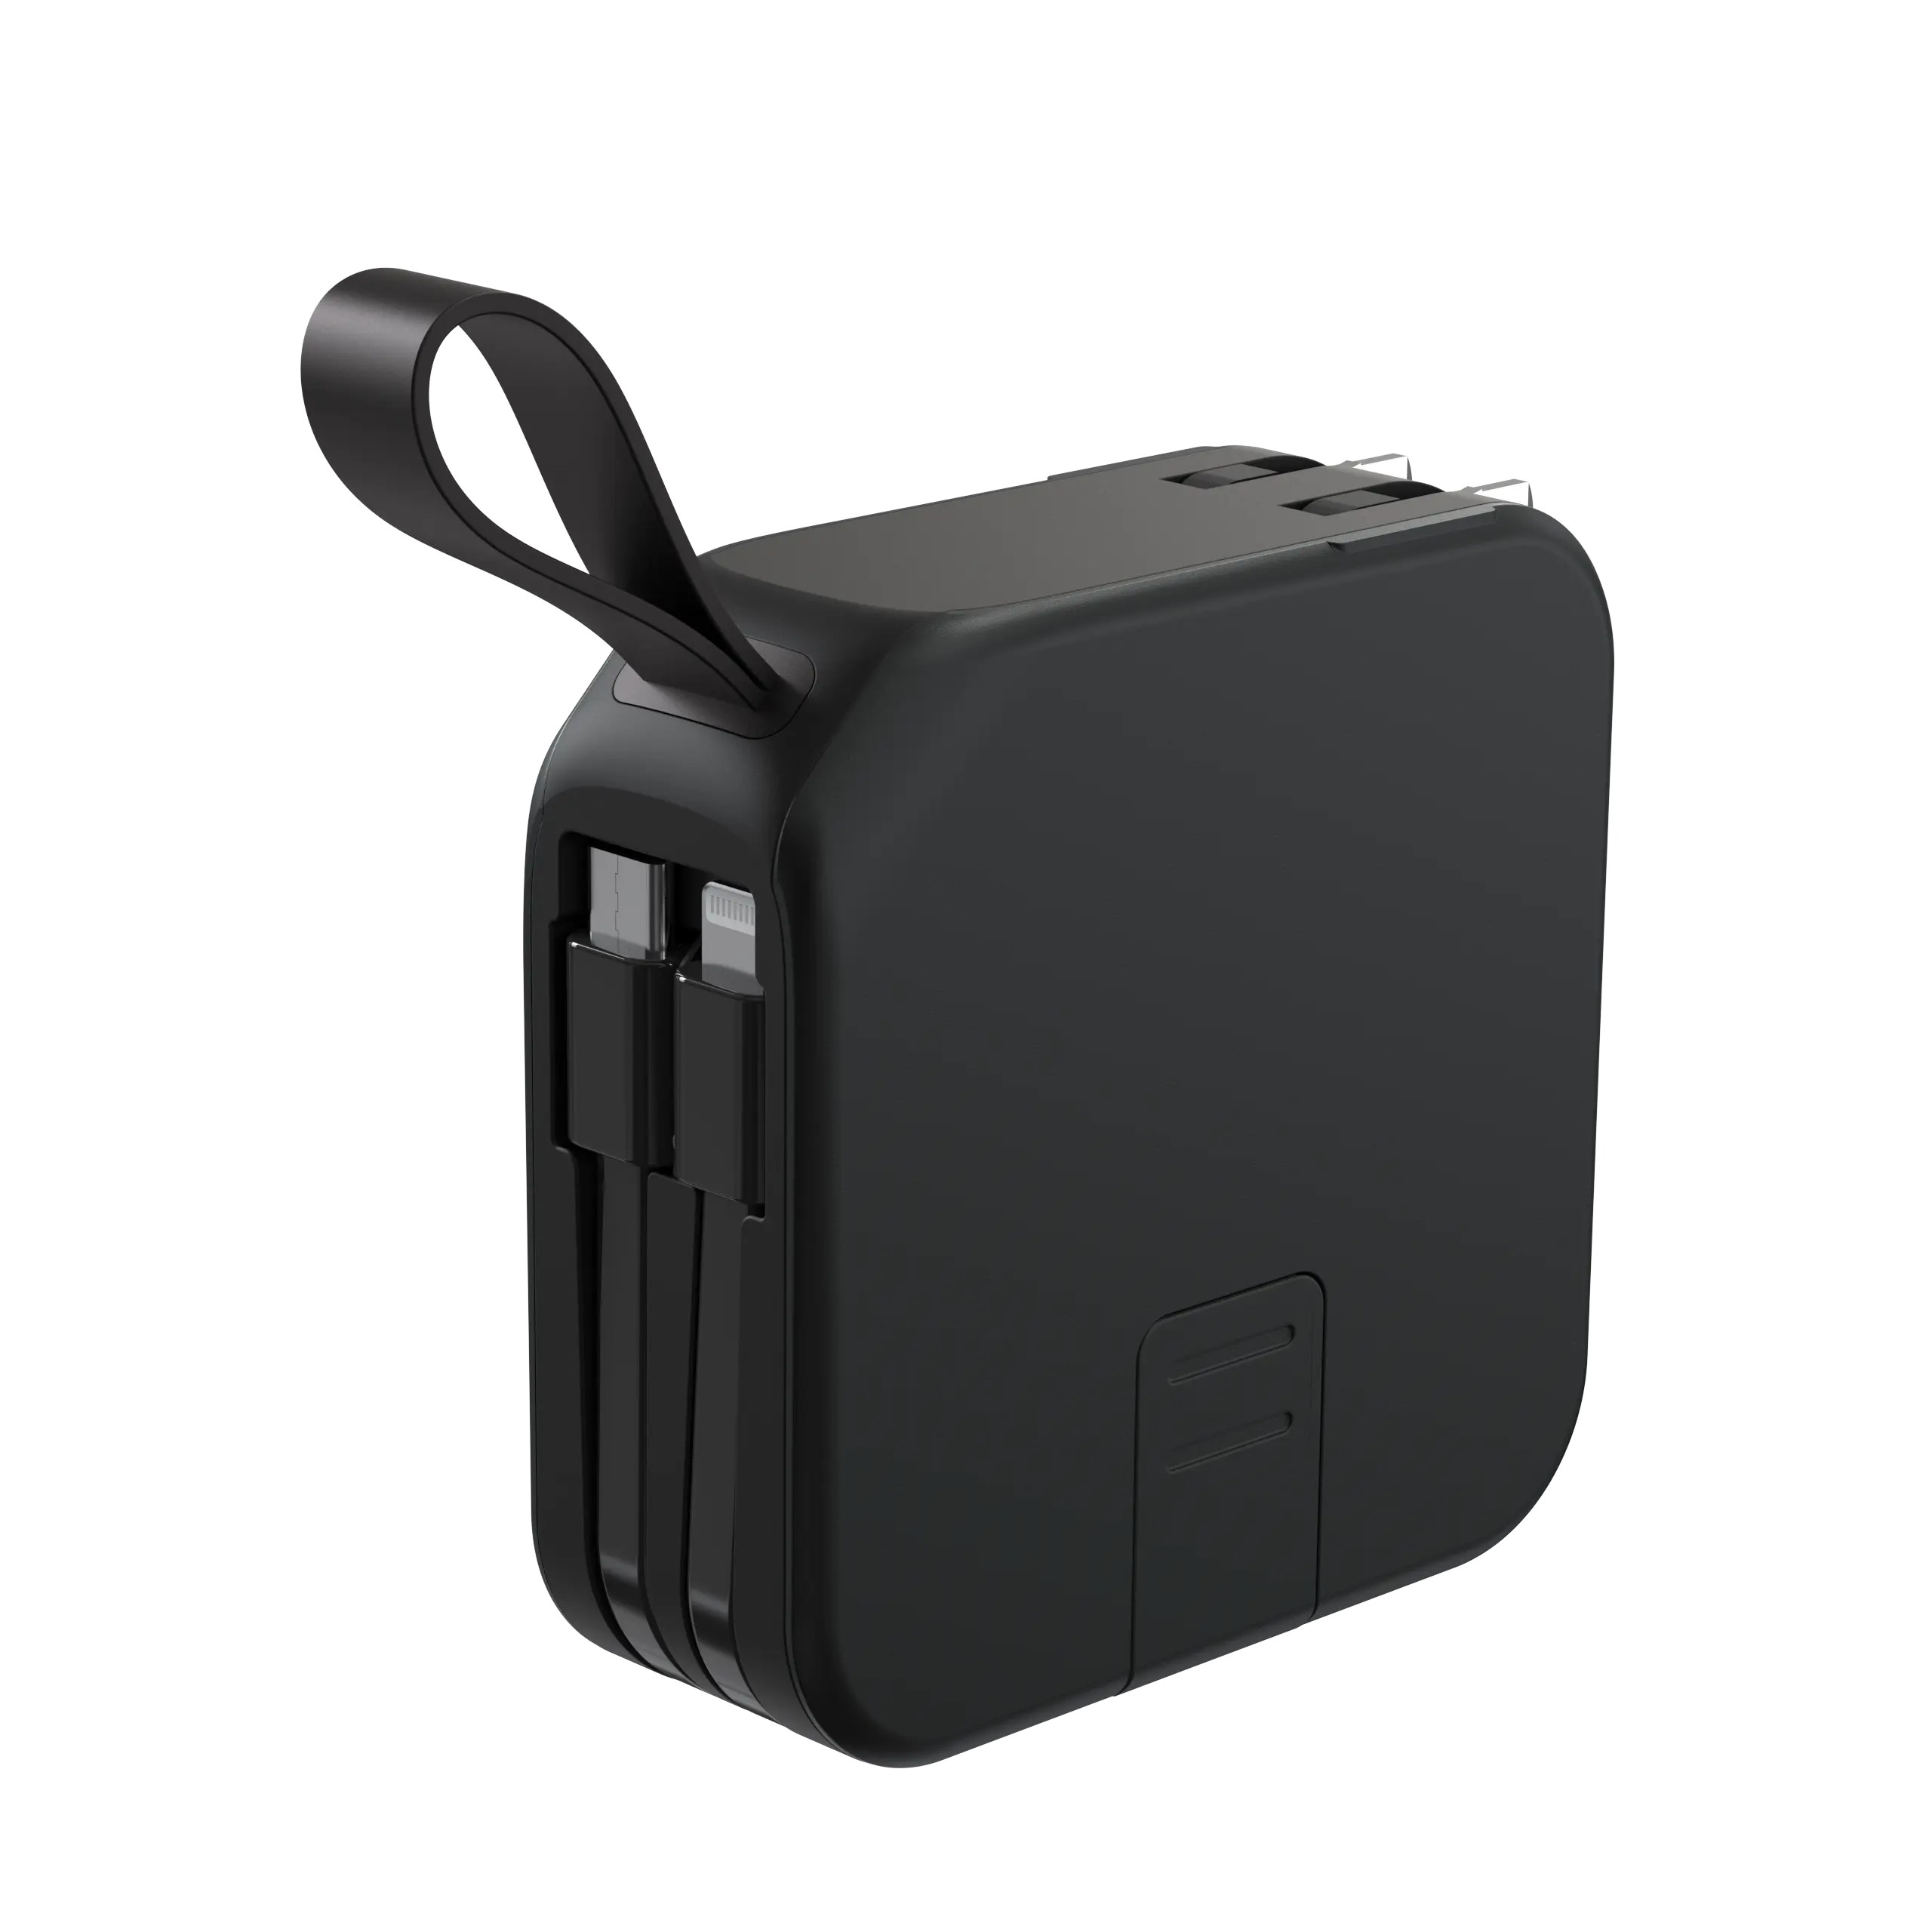 Grafent 2023สินค้าใหม่ที่ชาร์จ USB อเนกประสงค์ขนาด10000มิลลิแอมป์แบตสำรองพร้อมแท่นชาร์จไร้สายและแท่นชาร์จในตัว